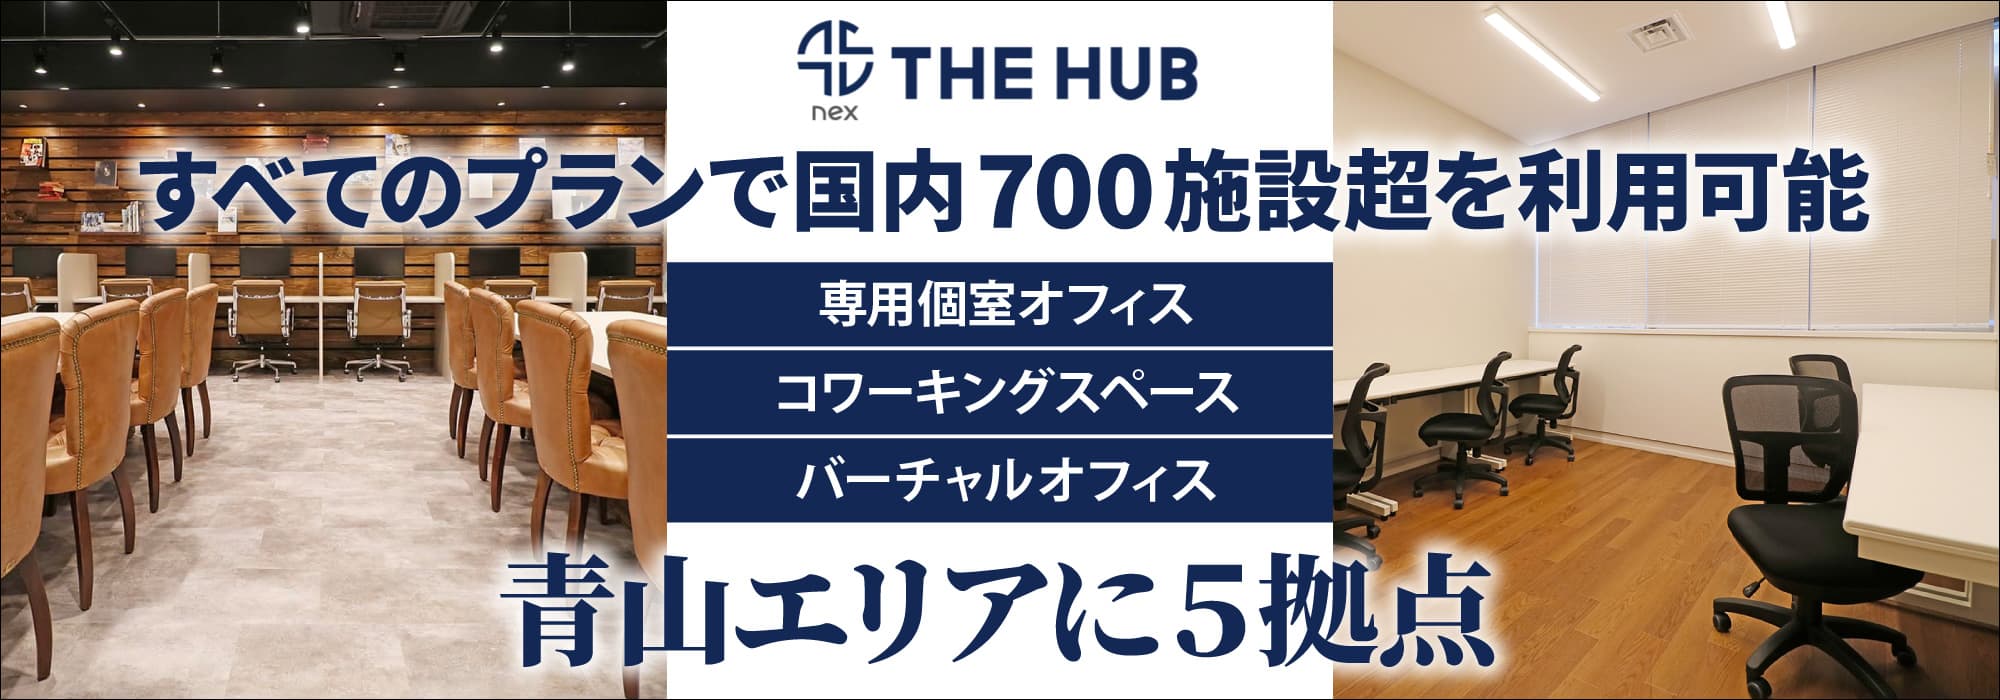 青山エリアに５拠点、創造力と生産性を刺激するレンタルオフィス【THE HUB】すべてのプランで国内700施設超を利用可能